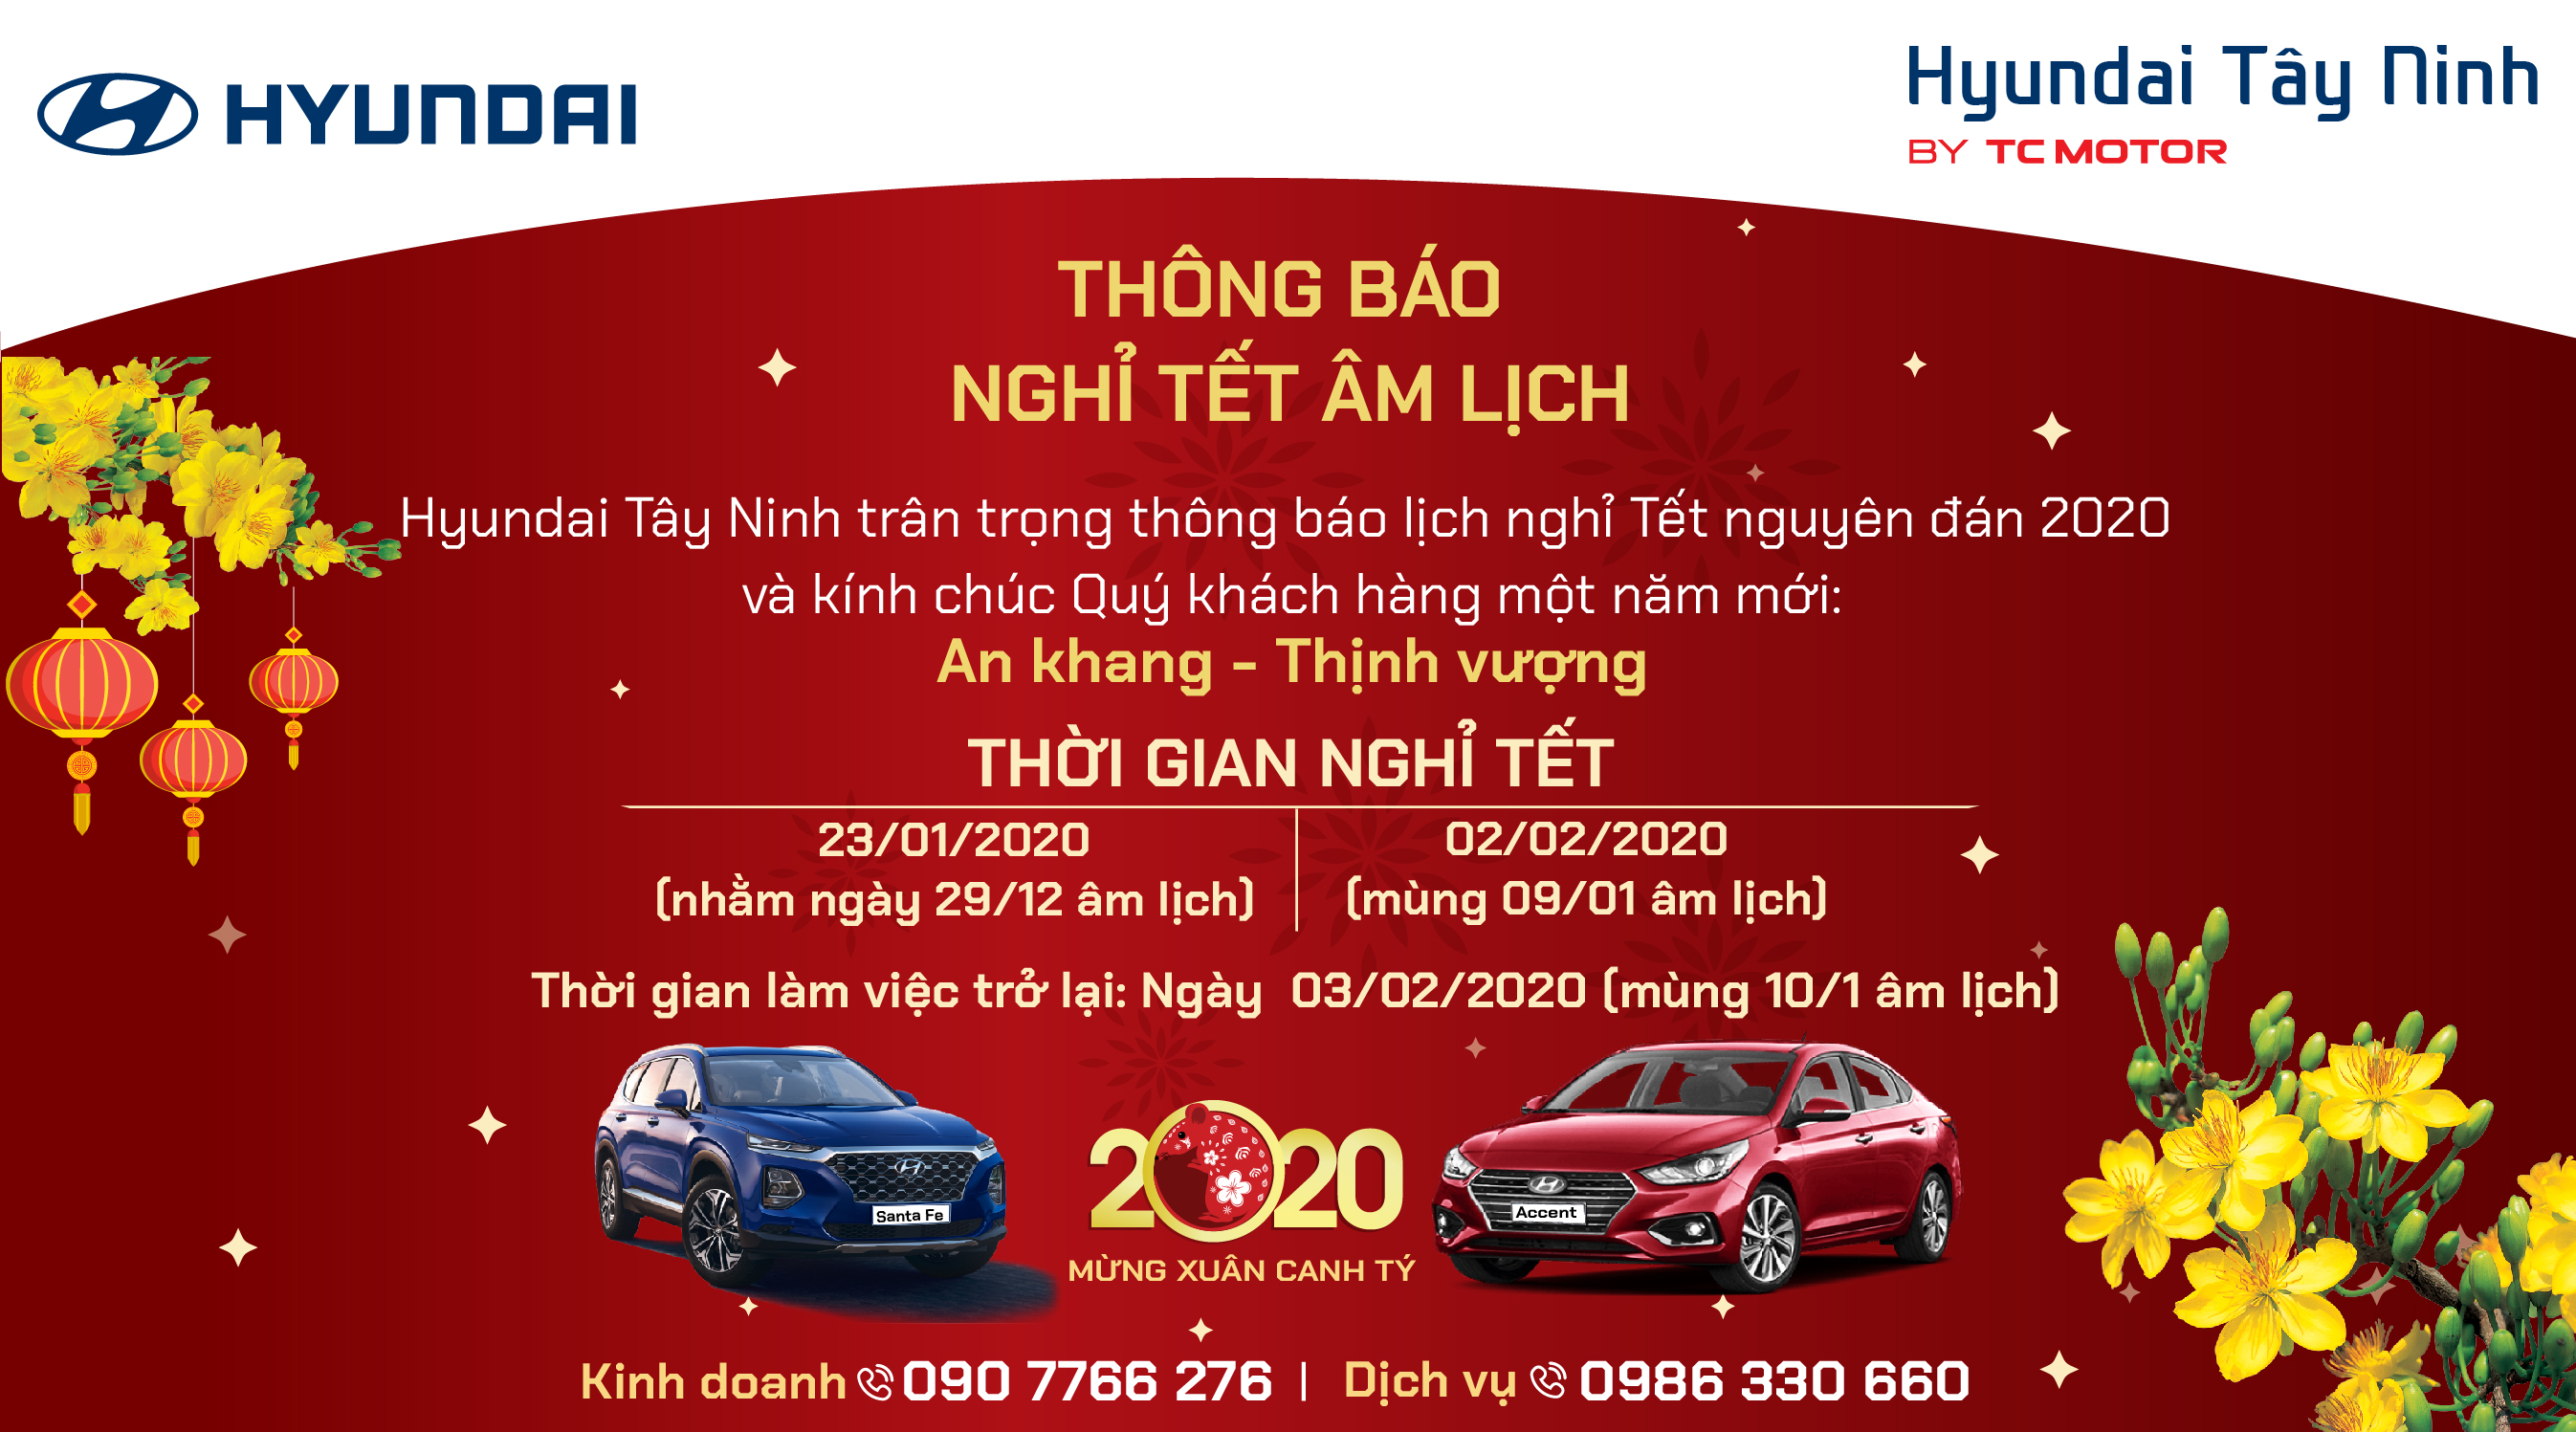 Hyundai Tây Ninh trân trọng thông báo lịch nghỉ tết Nguyên đán 2020